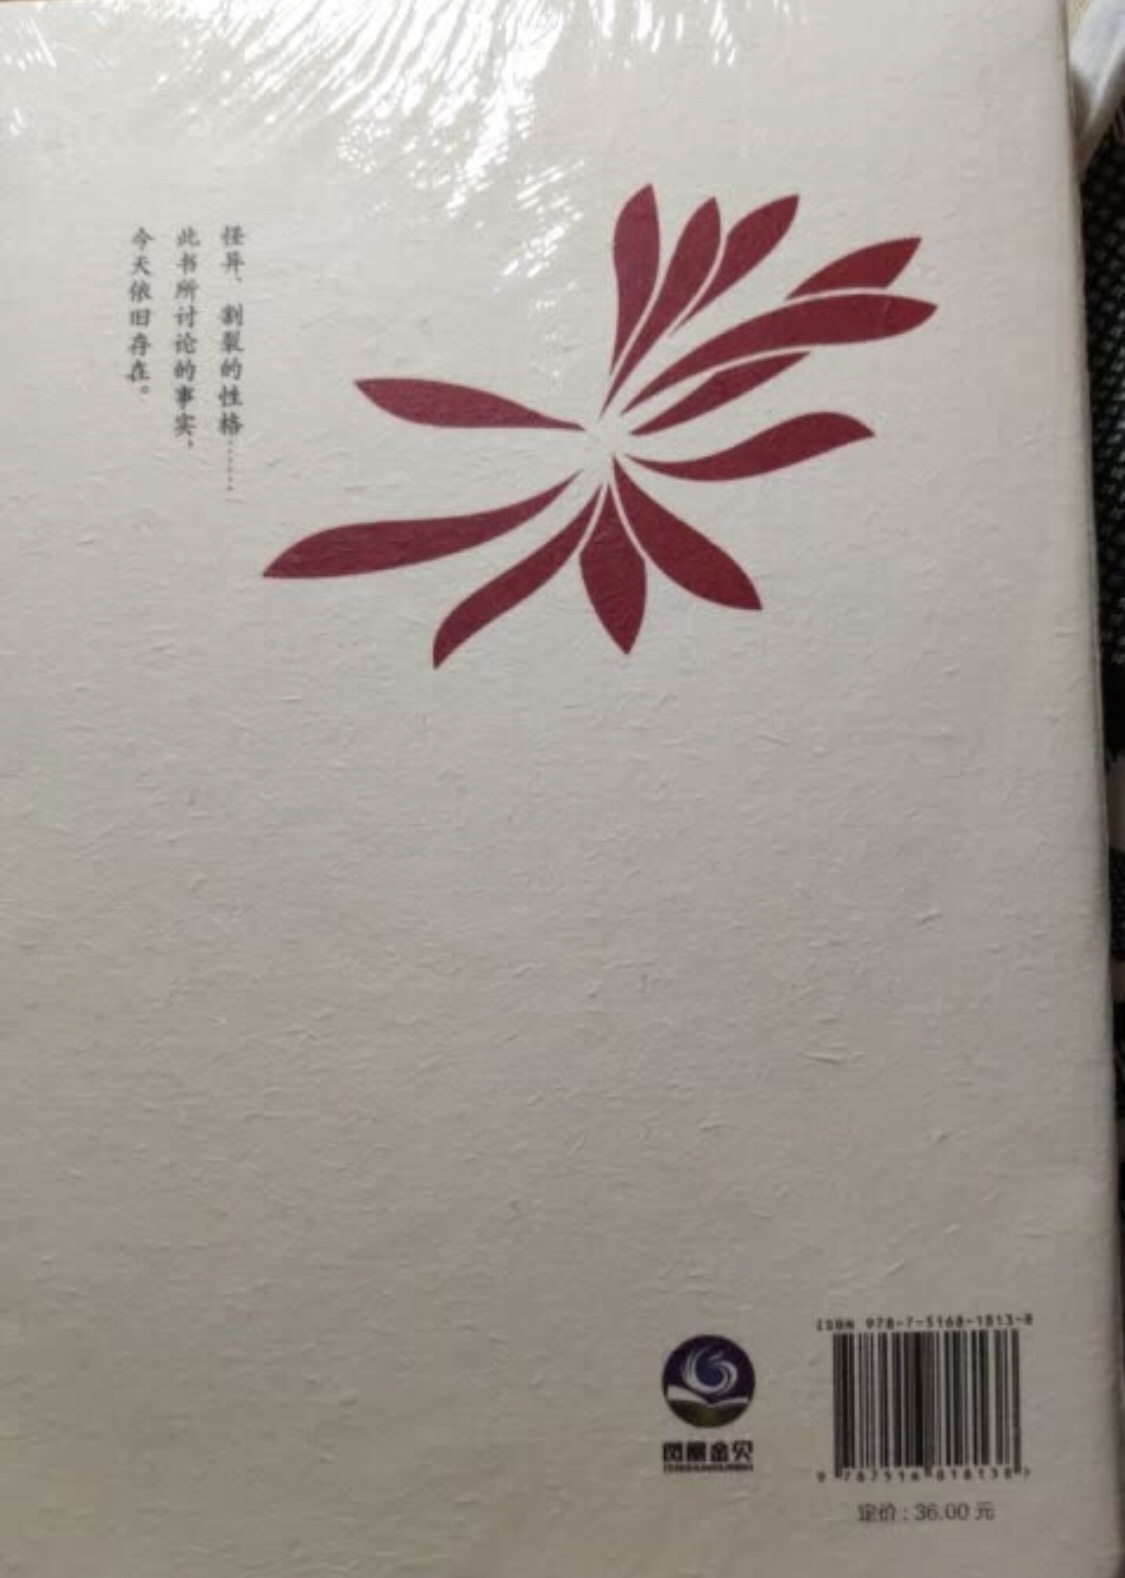 朋友推荐的书，还没来得及看只知道是讲日本的，希望不错。